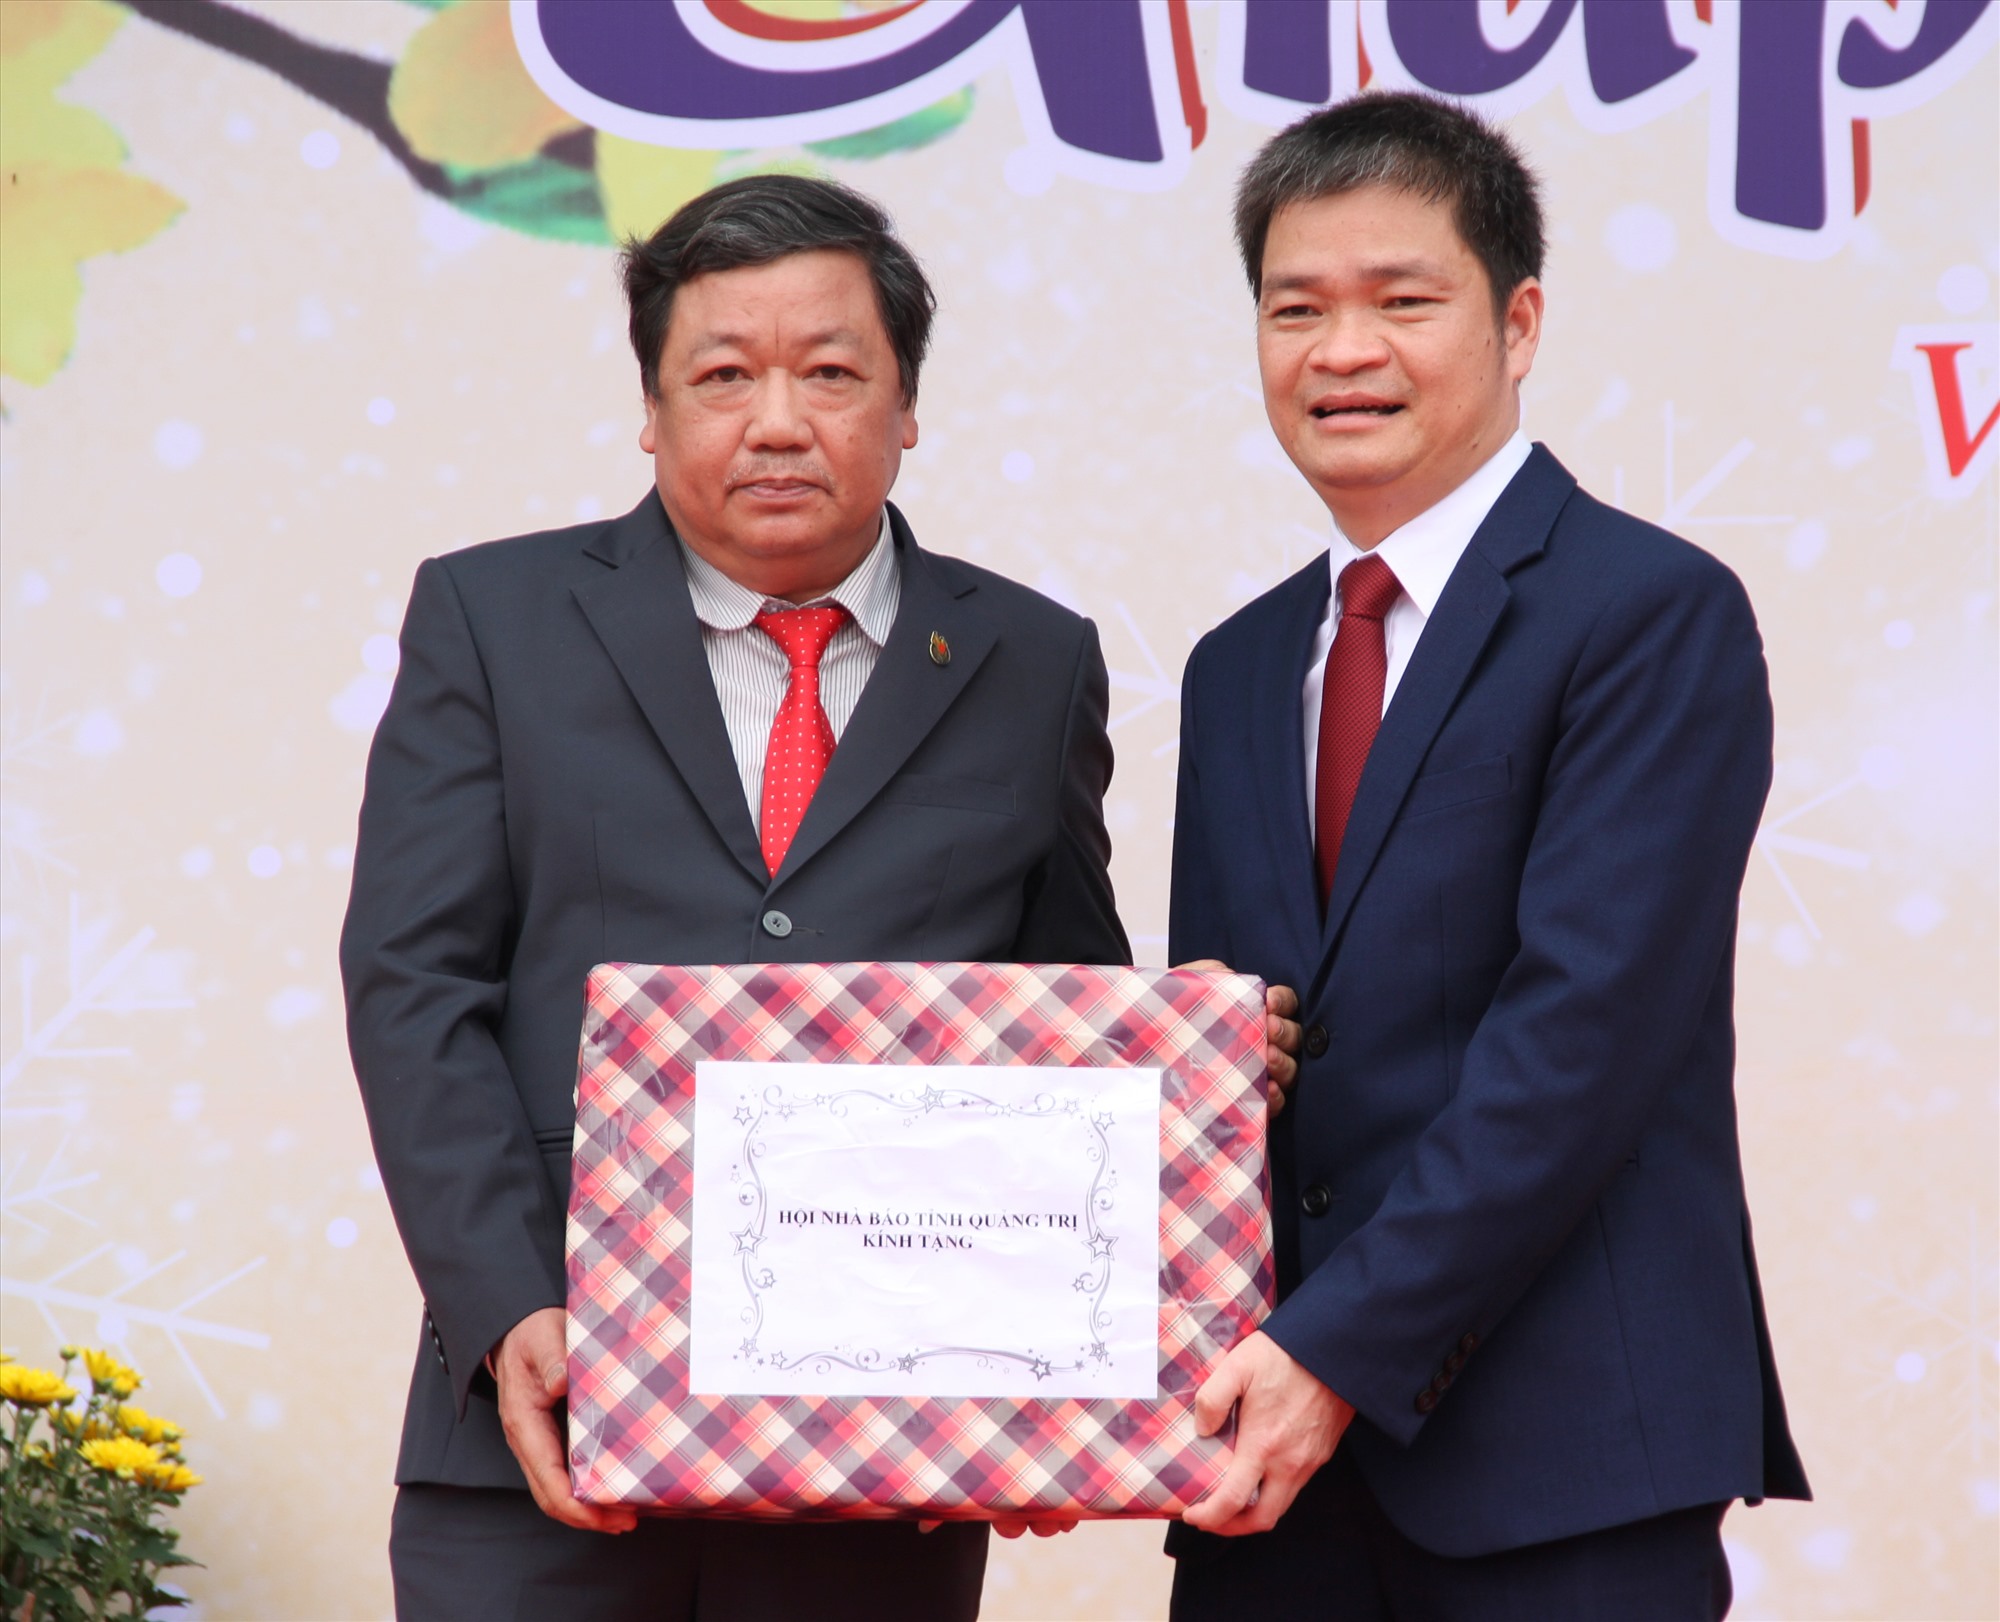 Chủ tịch Hội Nhà báo tỉnh, Tổng Biên tập Báo Quảng Trị Trương Đức Minh Tứ trao tặng ấn phẩm báo chí cho huyện Vĩnh Linh - Ảnh: MĐ